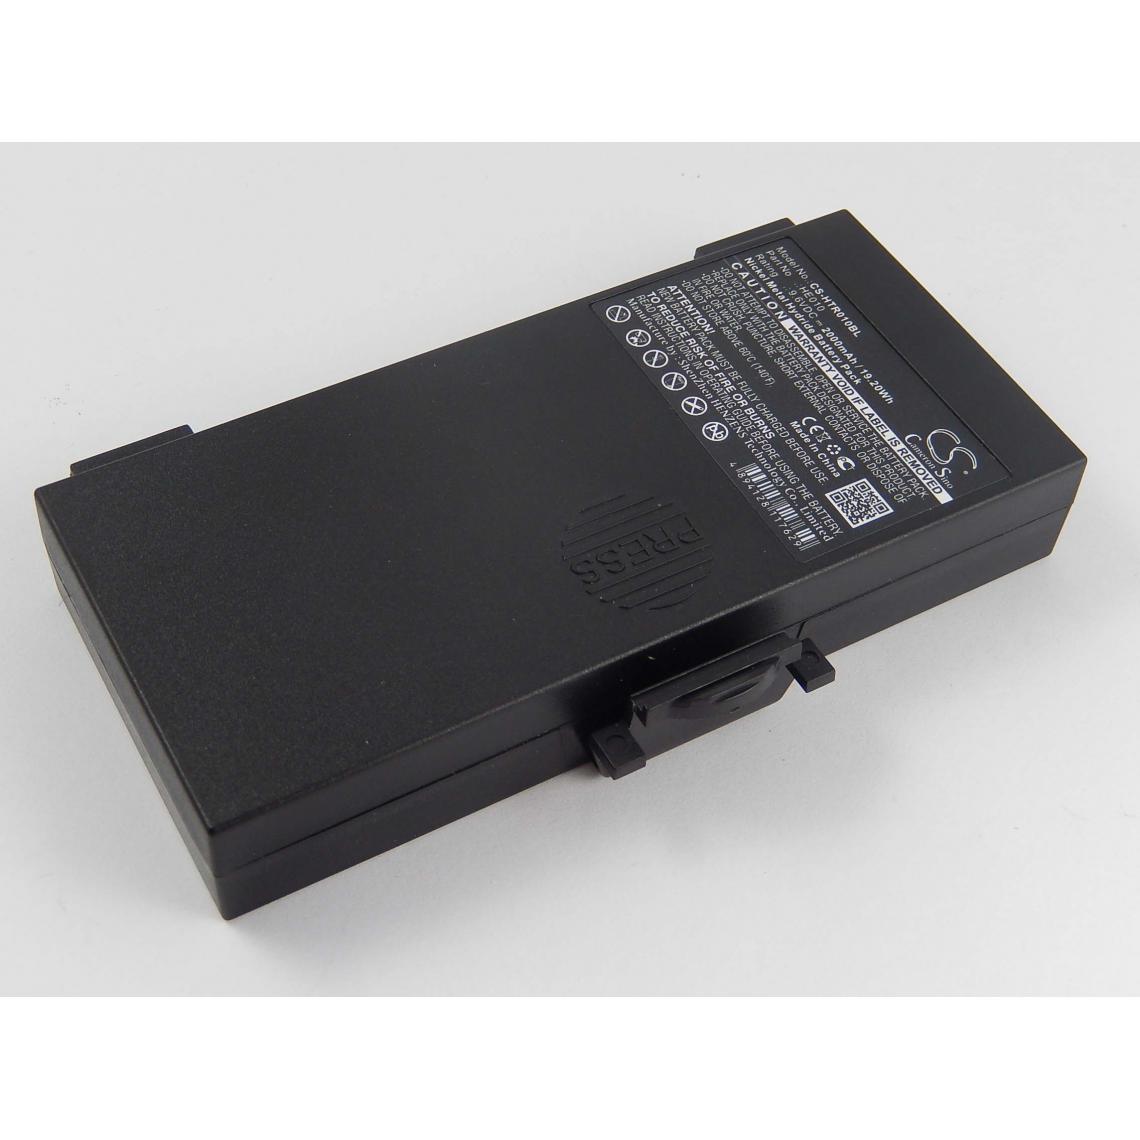 Vhbw - vhbw Batterie NiMH 2000mAh (9.6V) pourTélécommandes, Remote Control comme 6830300, 68303000, 68303010, 68303020 - Autre appareil de mesure